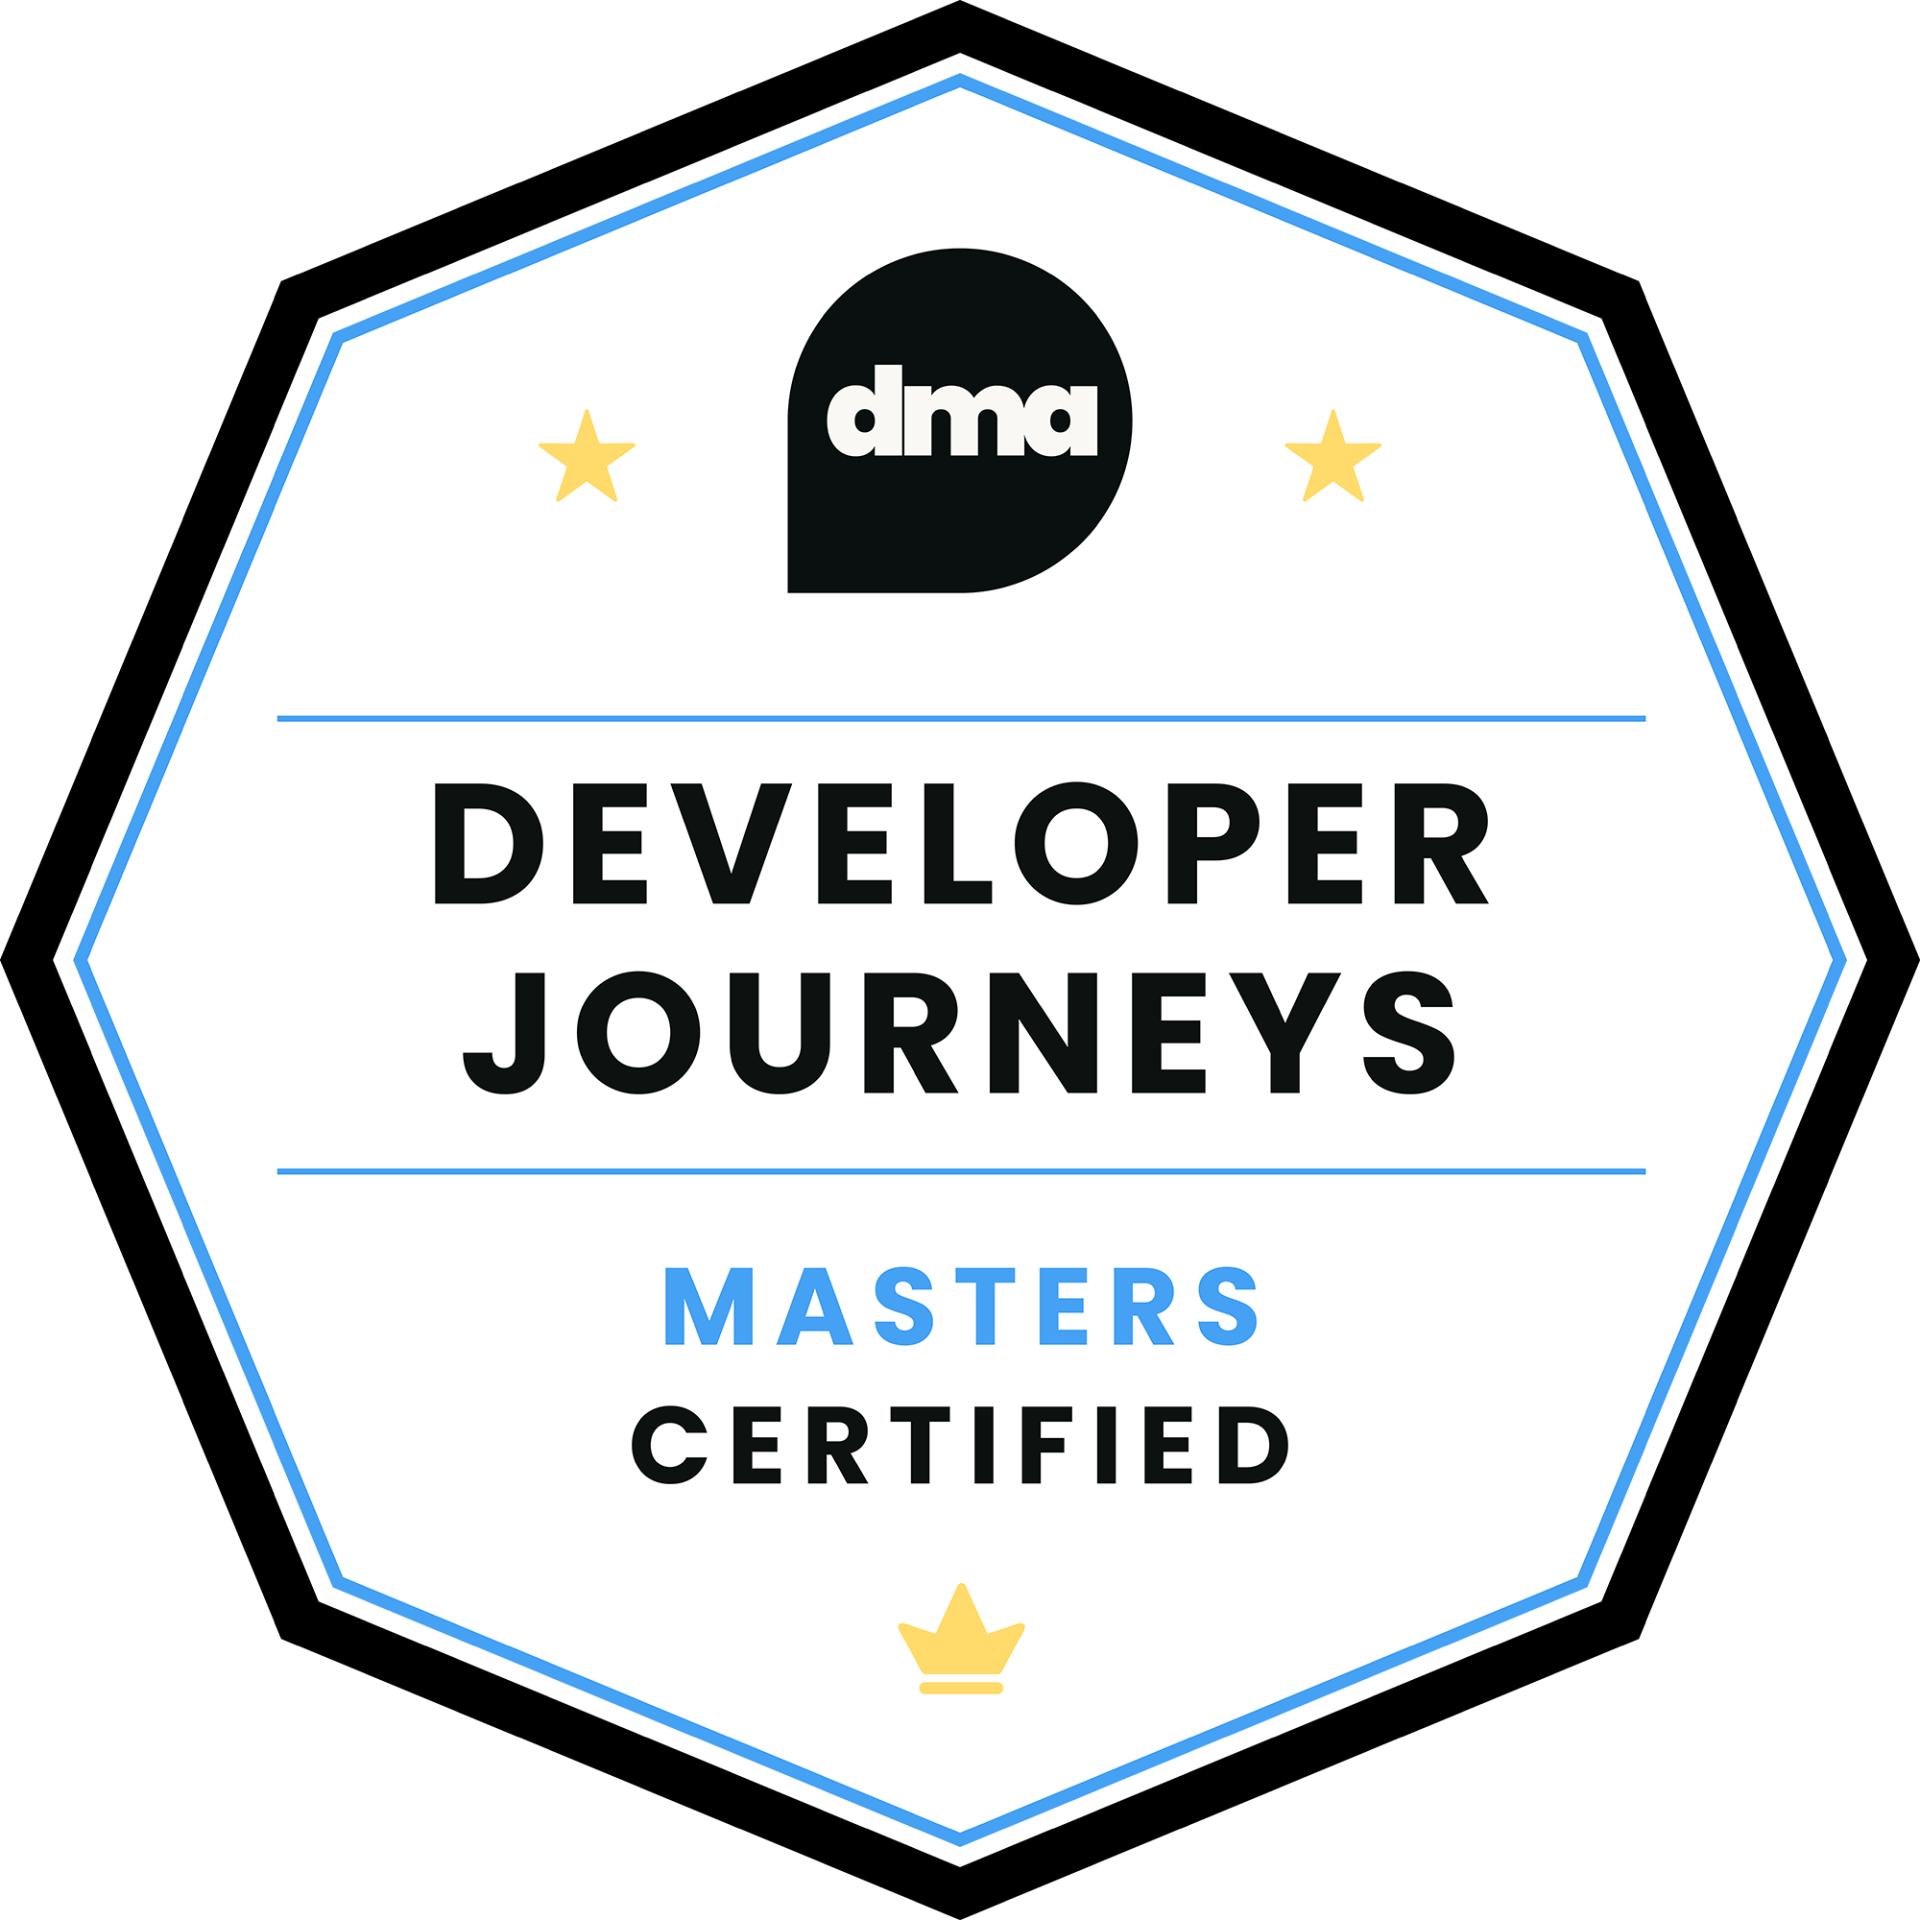 Developer Journeys Certified | Masters badge